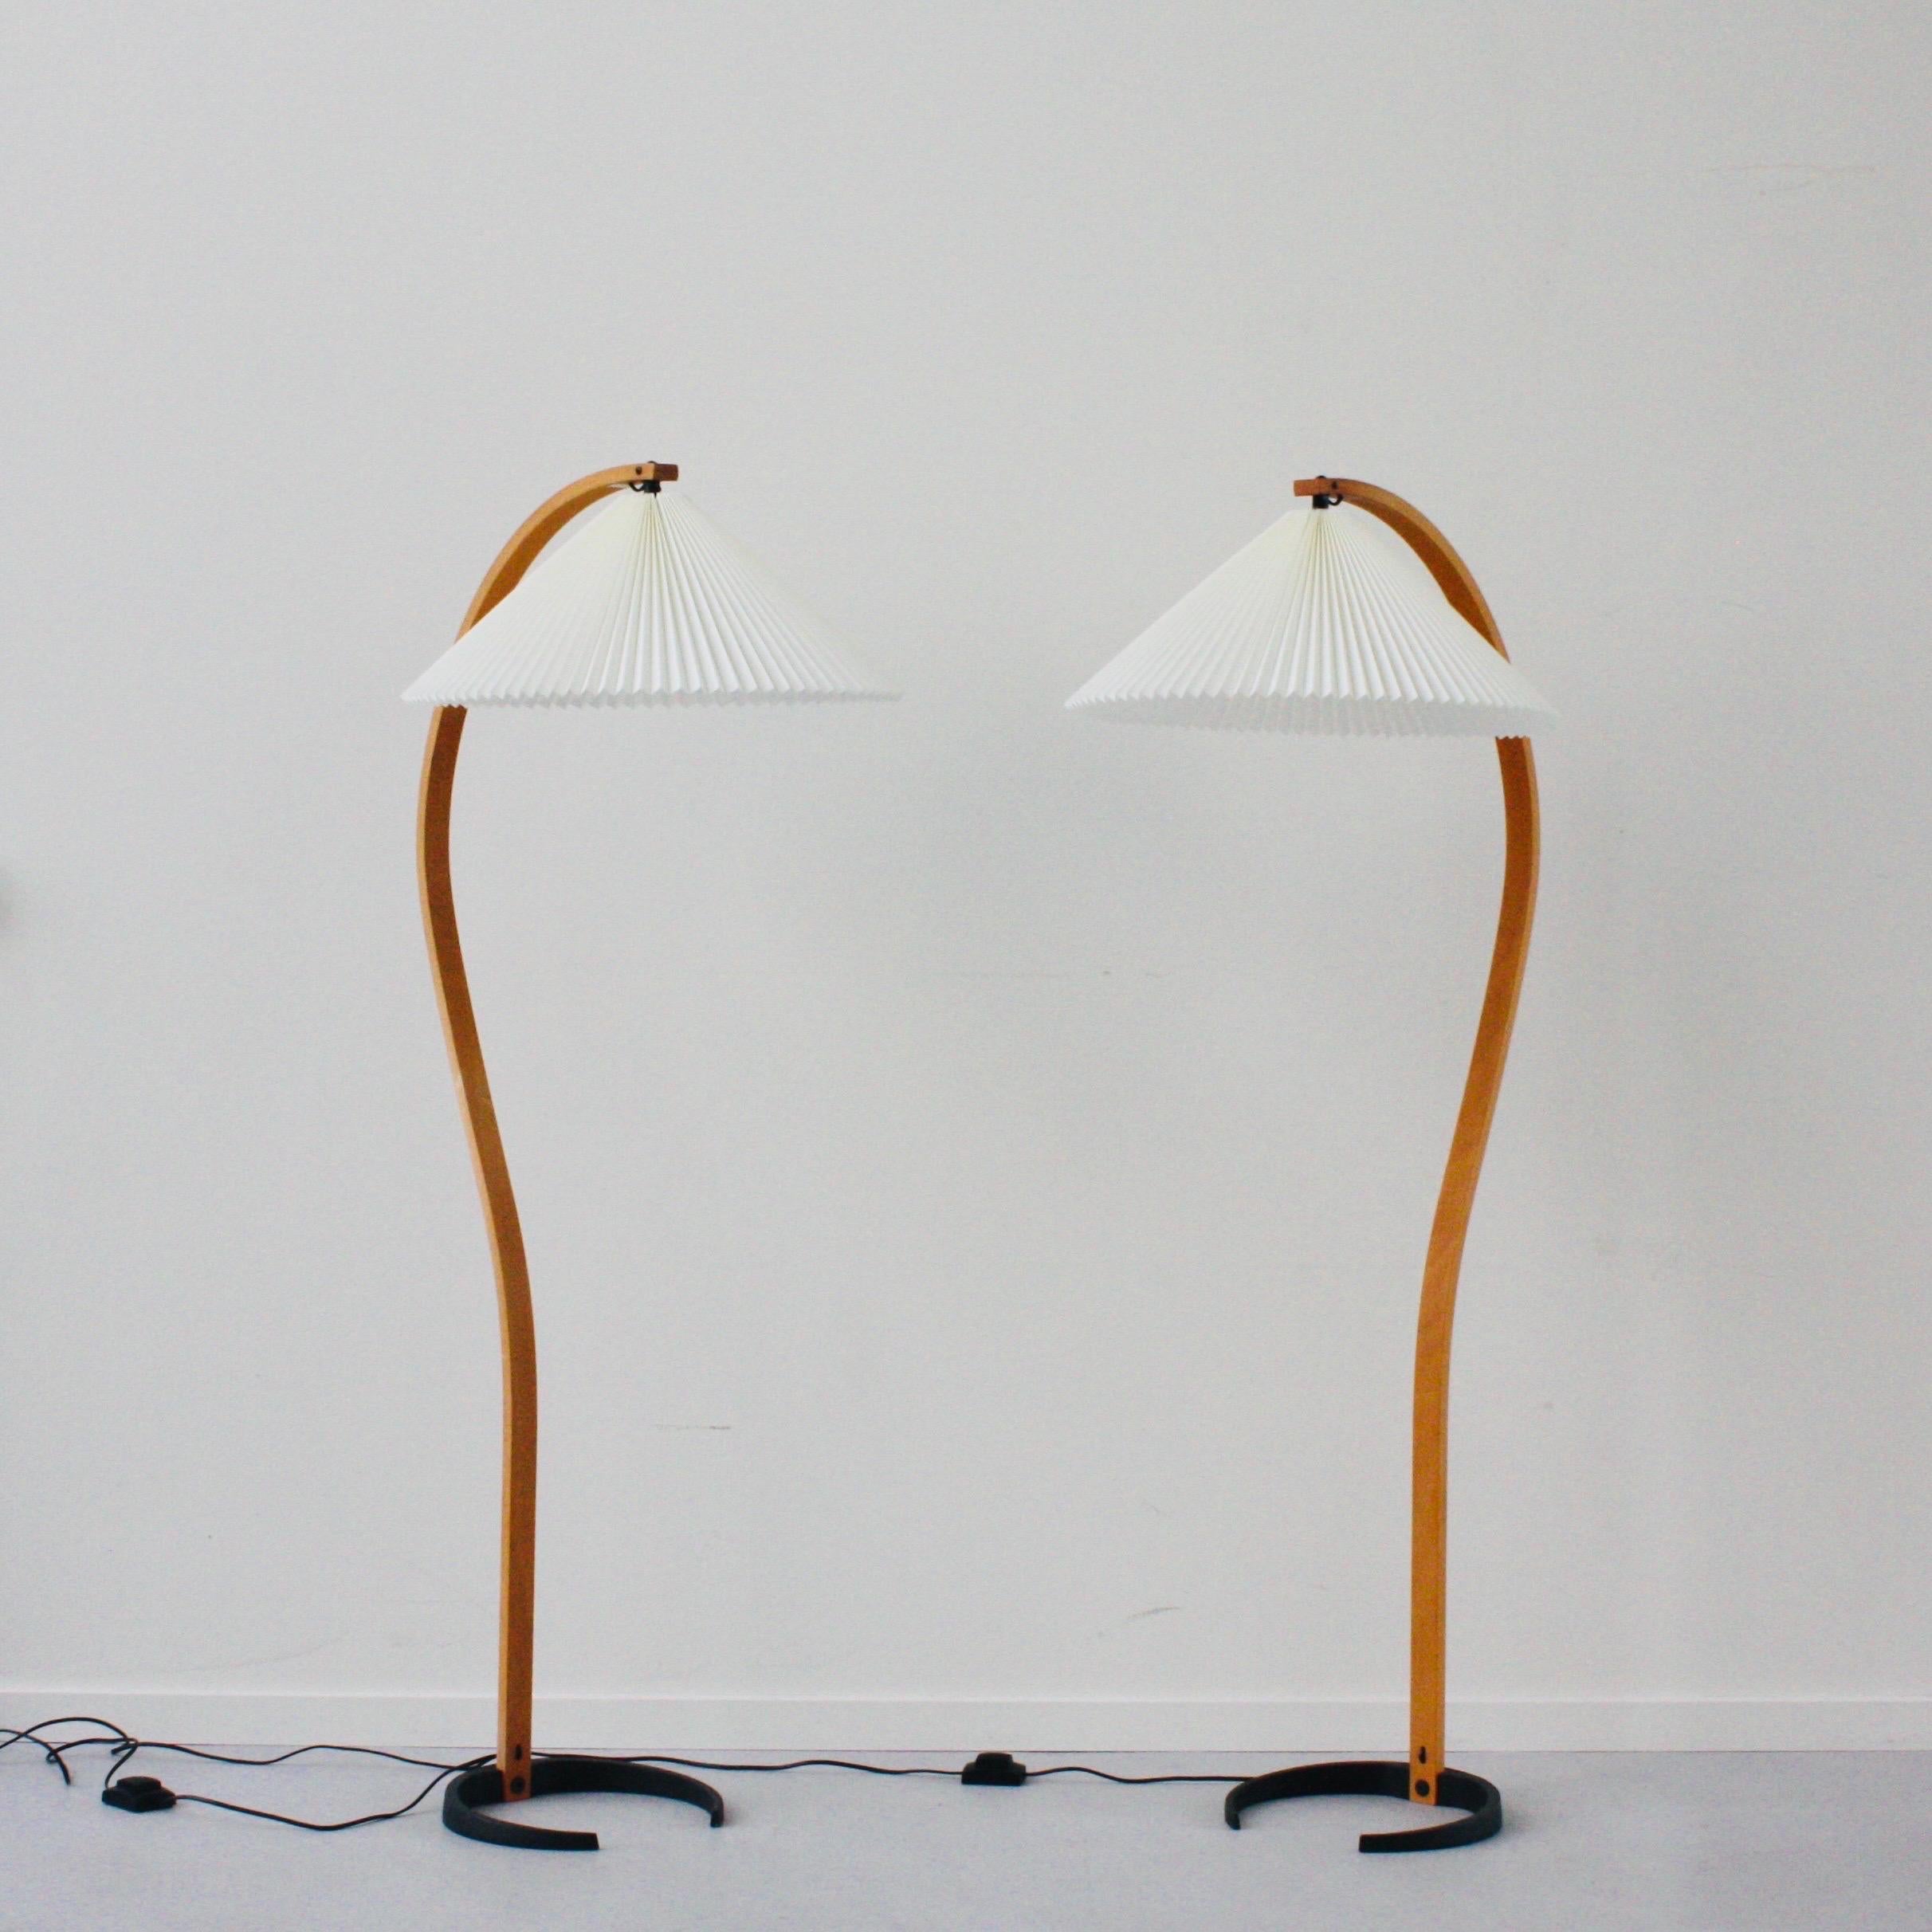 Ein Paar original dänische Timberline Nr. 840 Stehlampen von Mads Caprani. Ein auffälliges Design, das gleichzeitig die 1970er Jahre widerspiegelt und zeitlos ist - perfekt für jede moderne Einrichtung.

* Ein Satz (2) gebogener Stehlampen aus